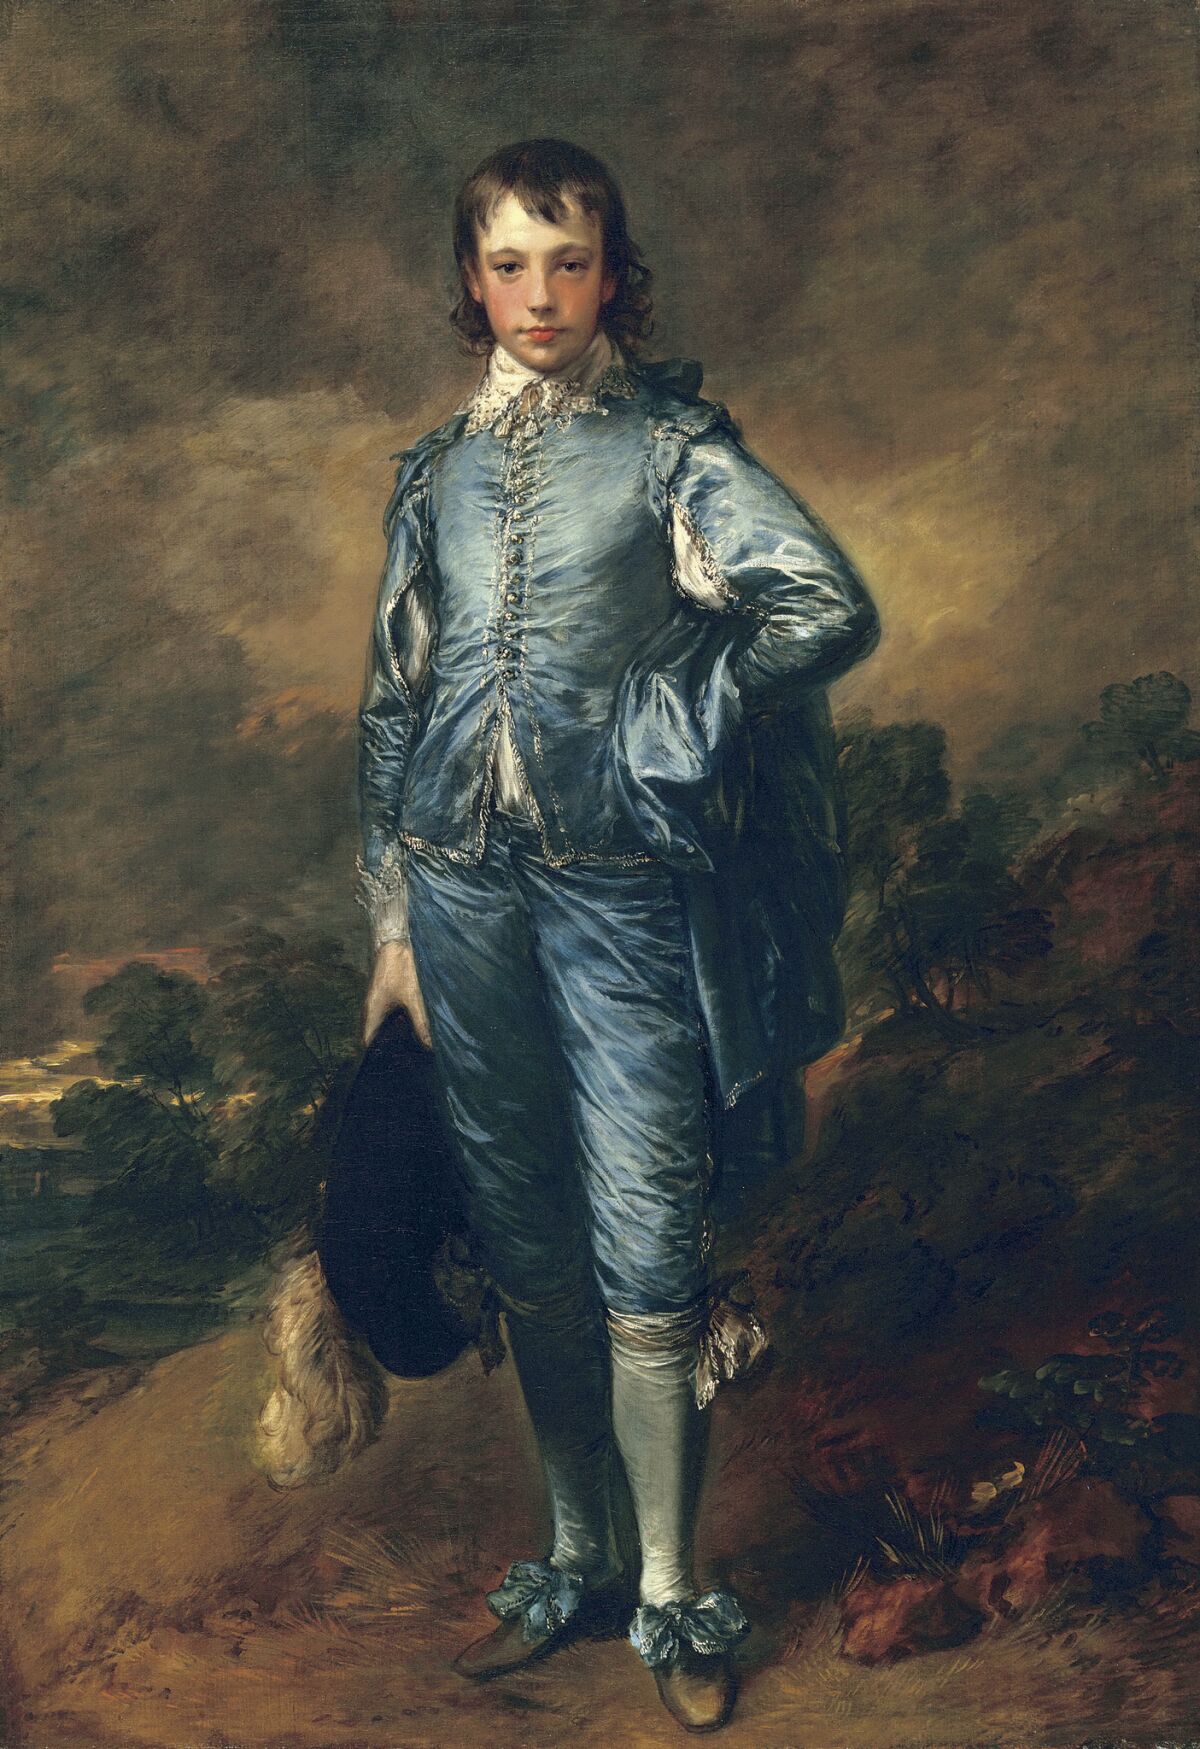 Thomas Gainsborough’s portrait “The Blue Boy.” 